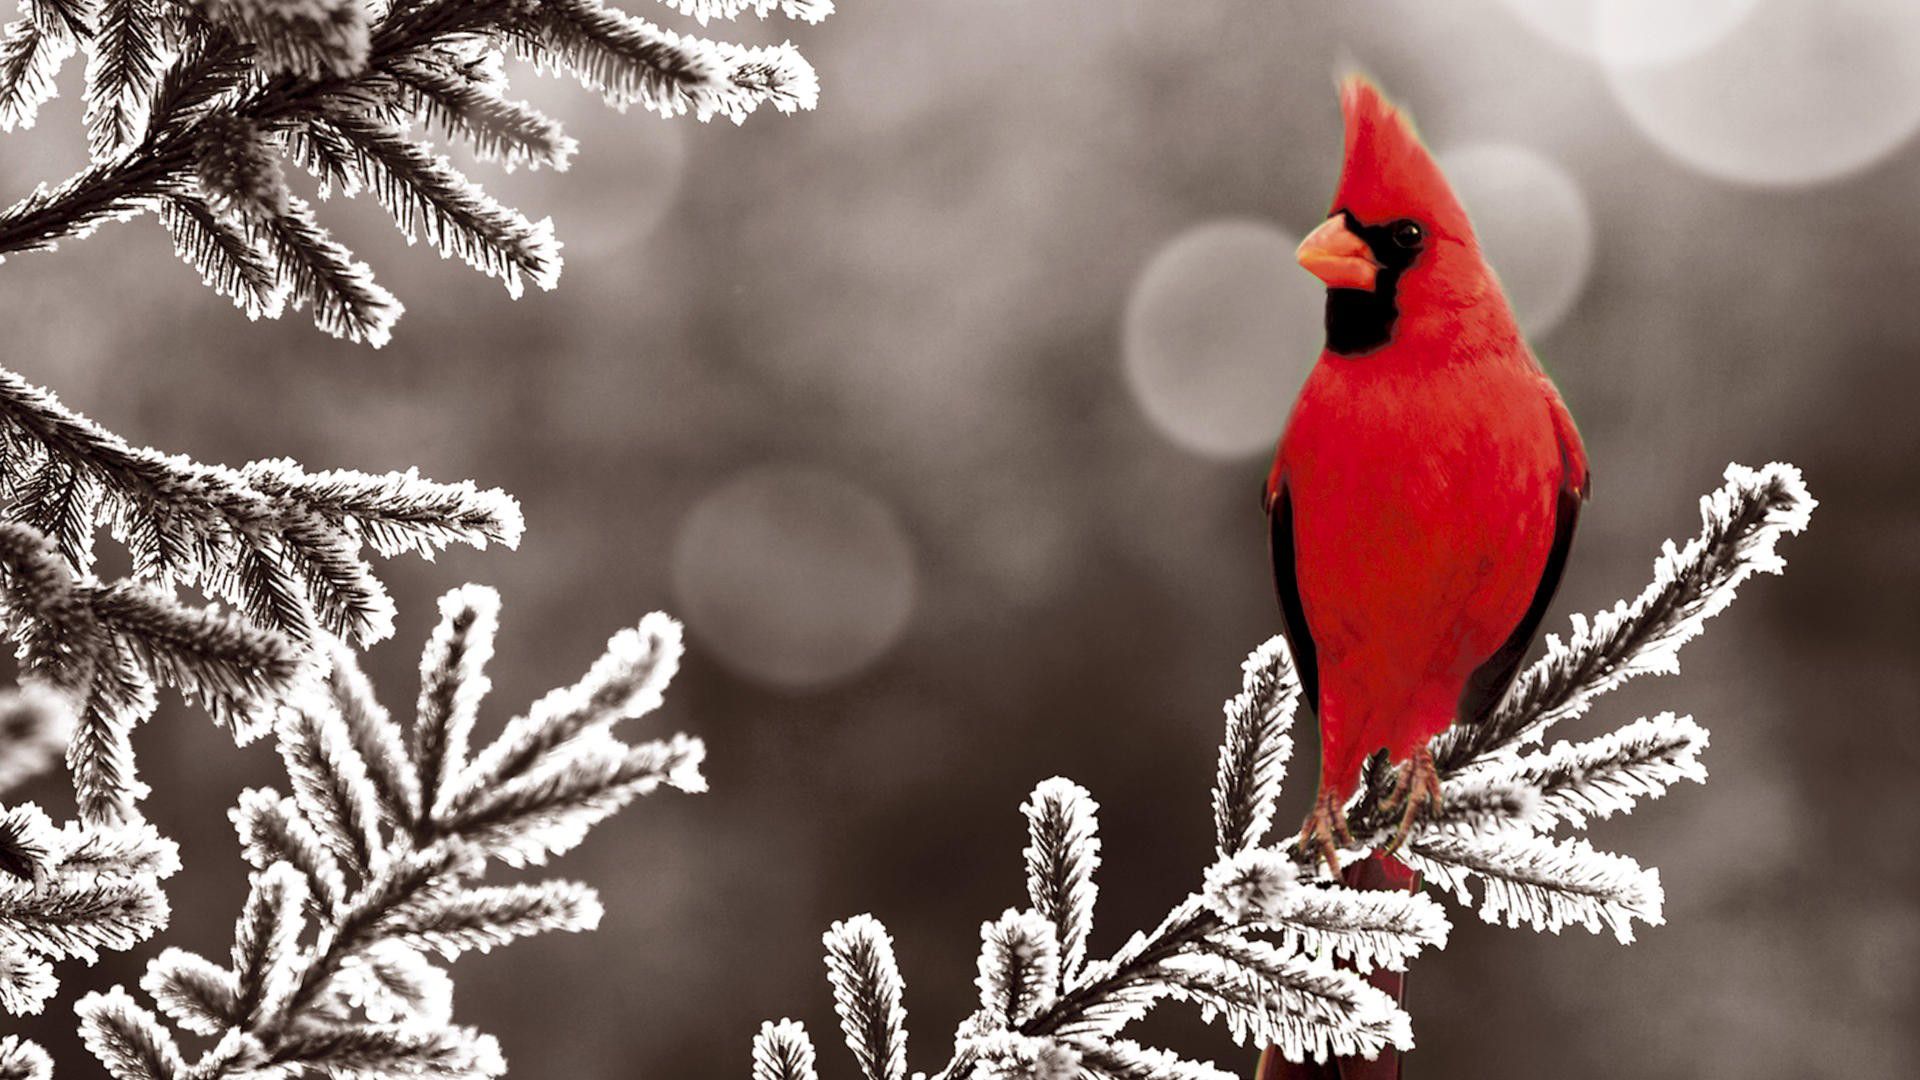 Winter Animal Wallpaper 1080p Free Download > Subwallpaper - Northern Cardinal In Winter - HD Wallpaper 